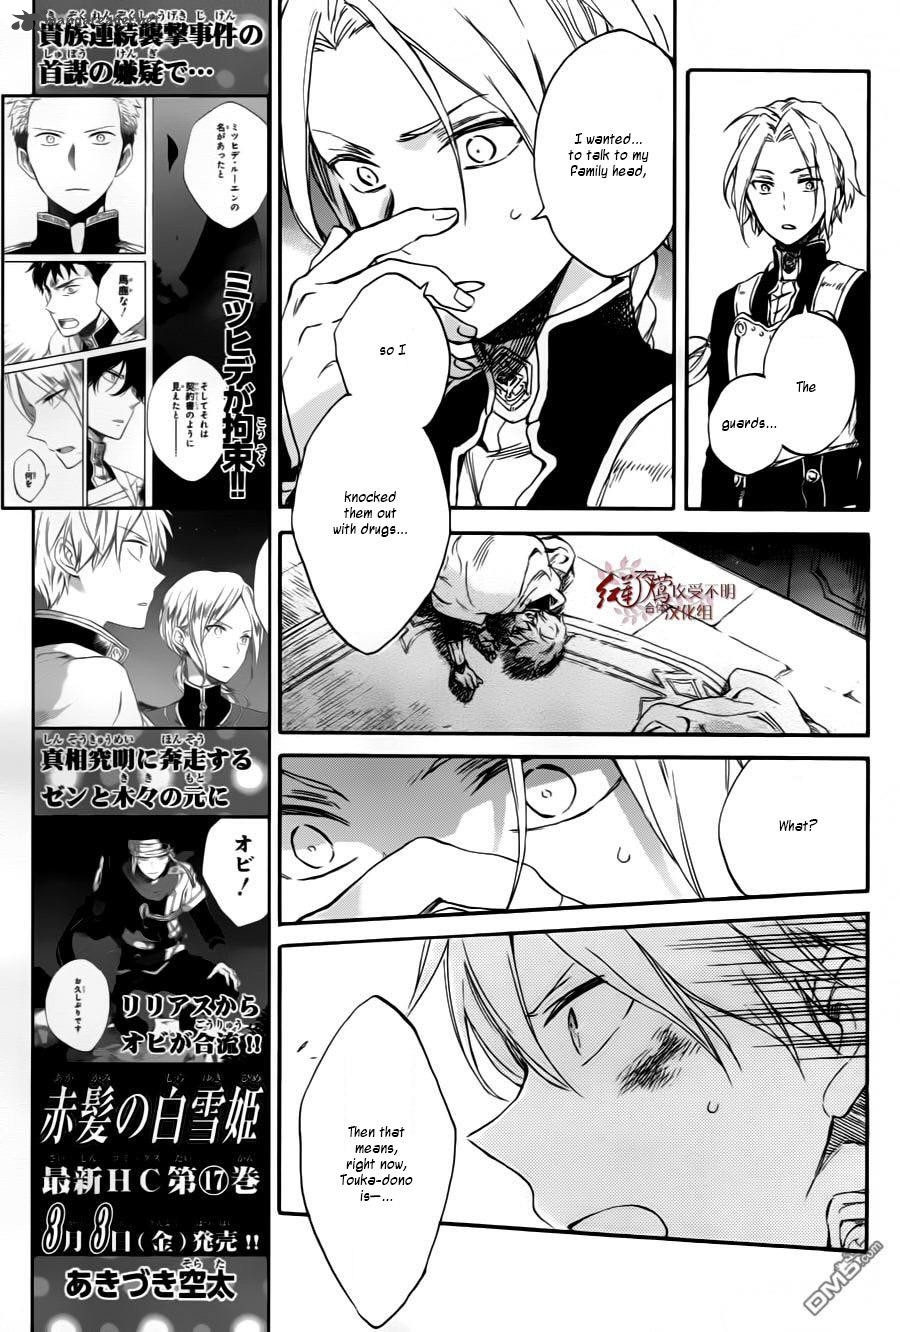 Akagami No Shirayukihime Chapter 84 Page 7